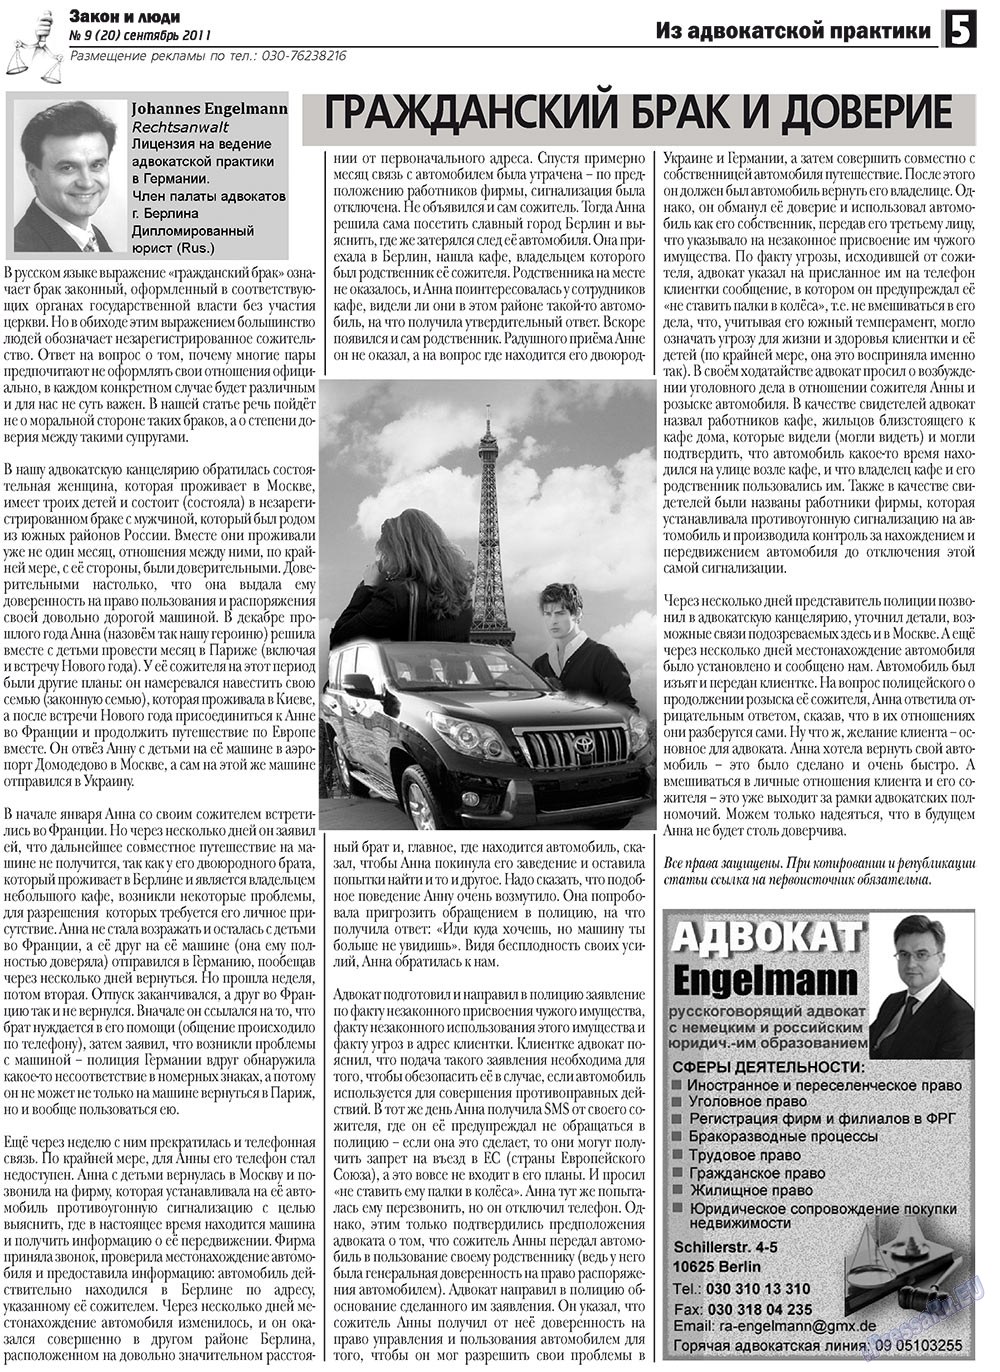 Закон и люди, газета. 2011 №9 стр.5